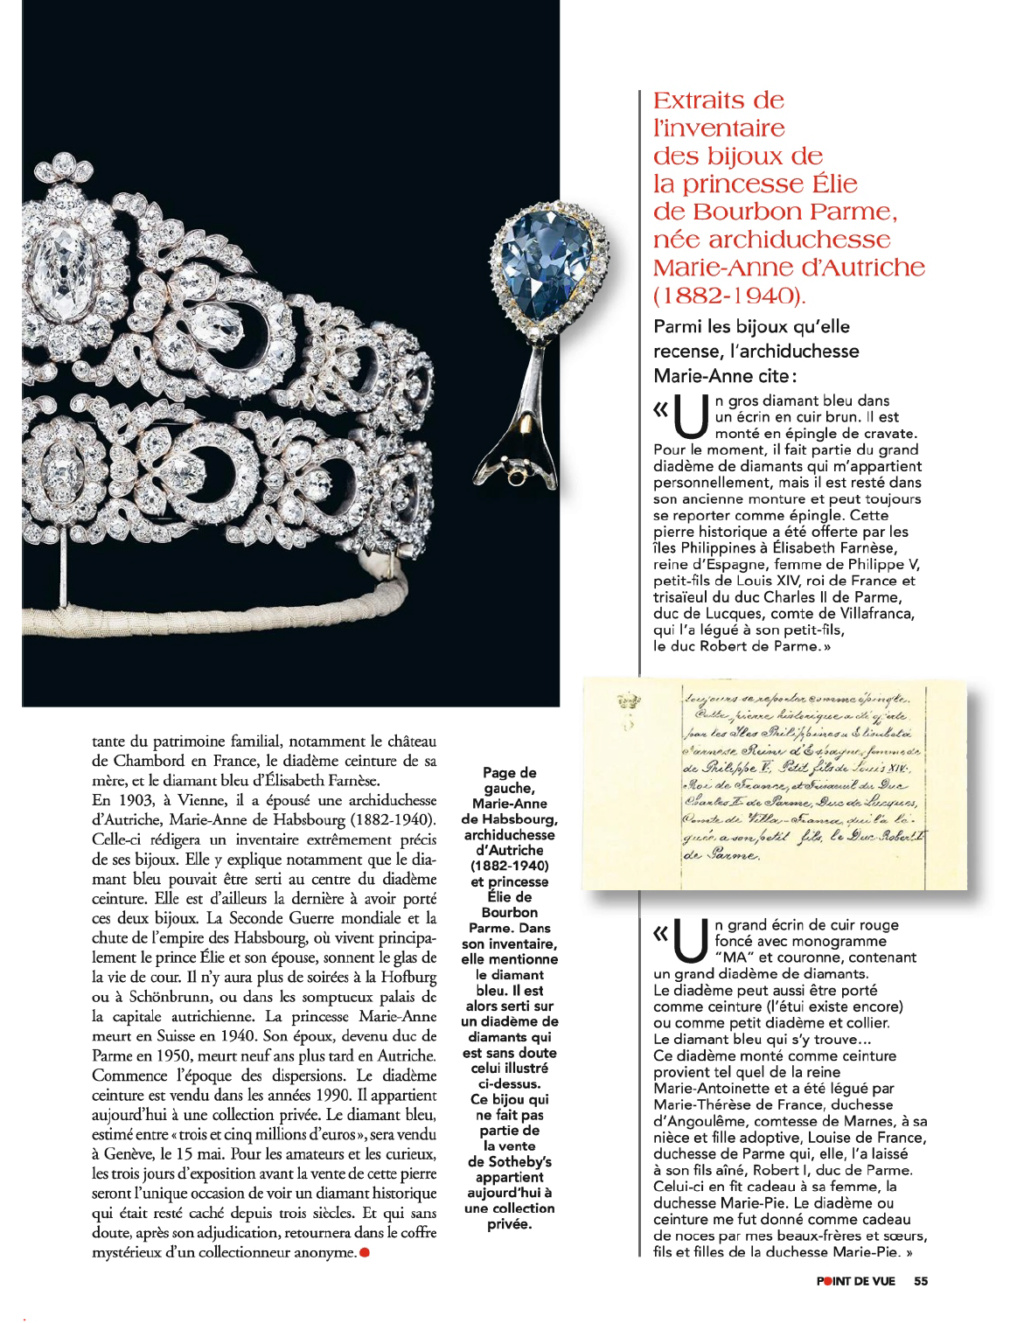 Bijoux de Marie-Antoinette : inventaire des parures, pierres précieuses et perles envoyées à Bruxelles durant la Révolution - Page 2 Image10